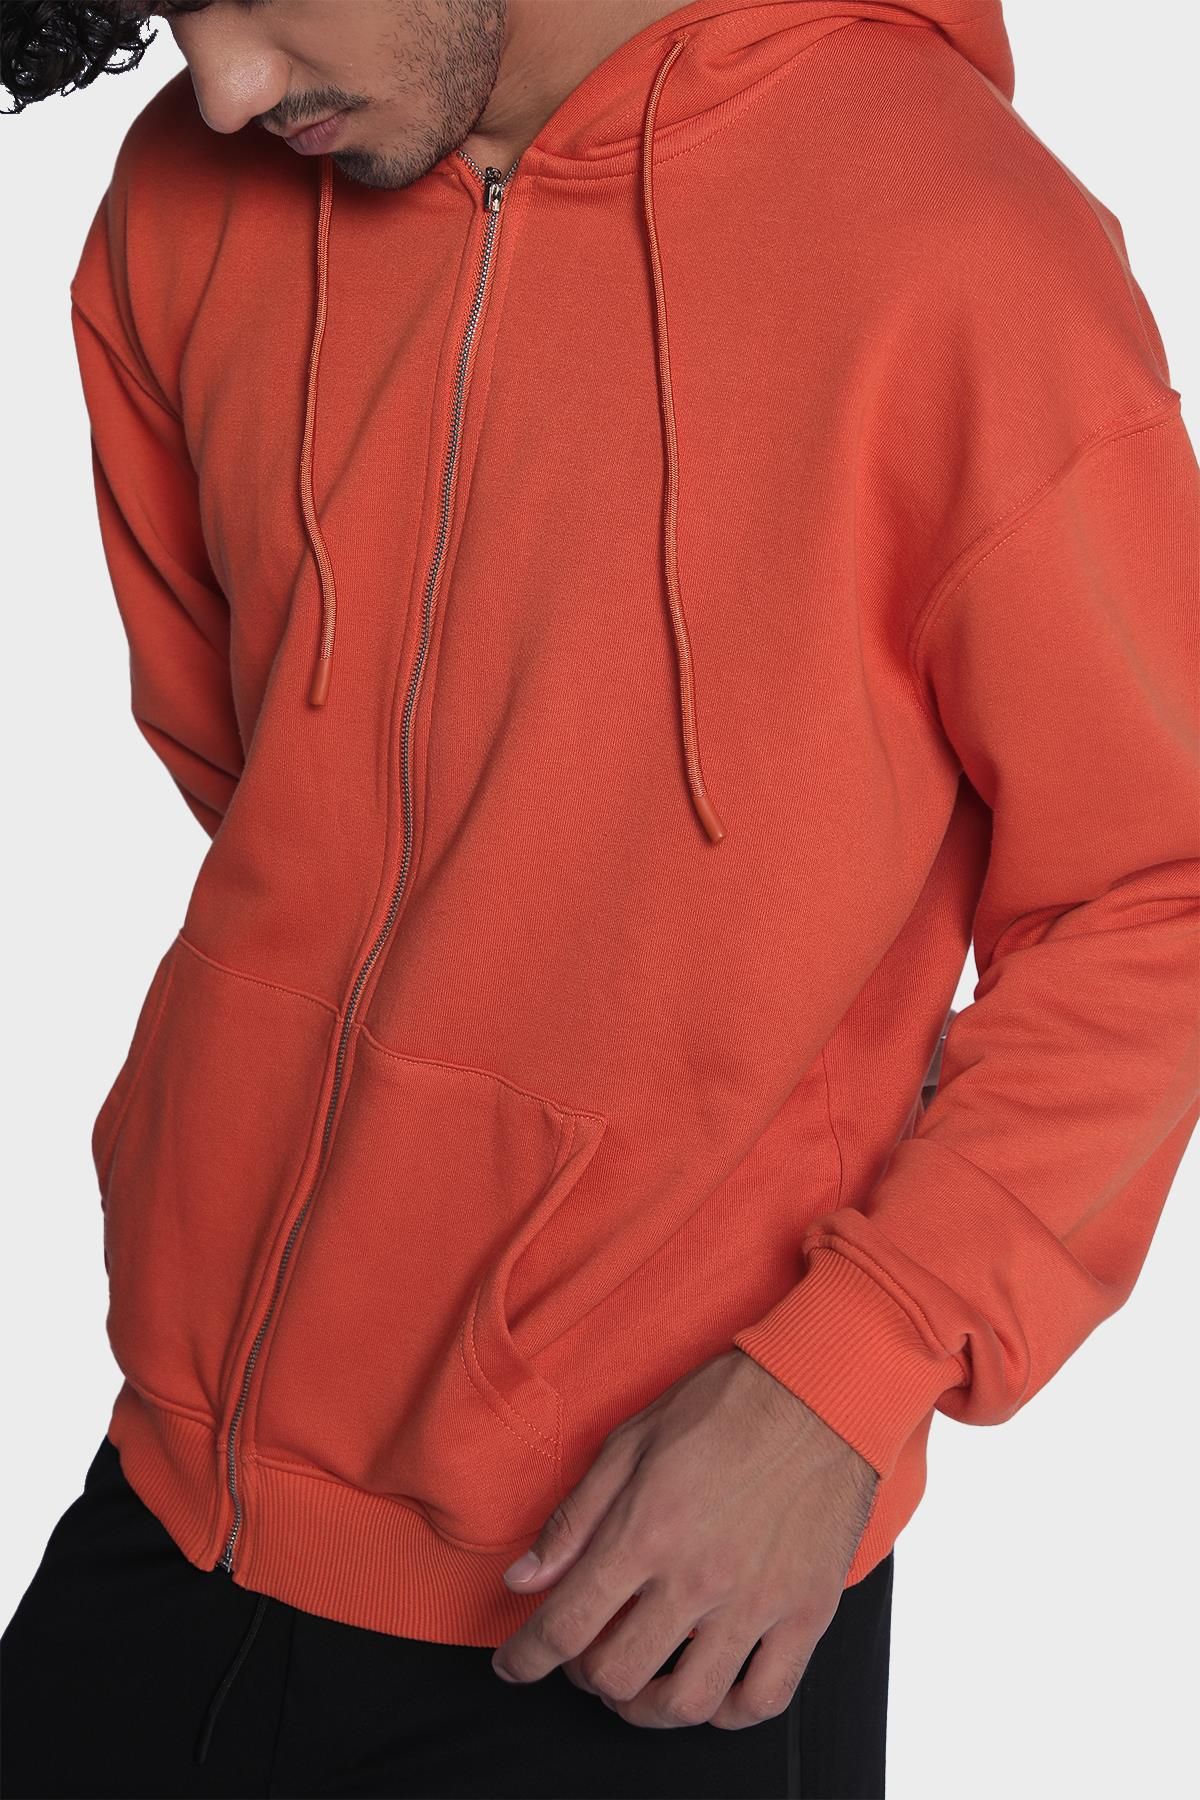 Mens hoodie, long sleeve and zippered sweatshirt - Orange